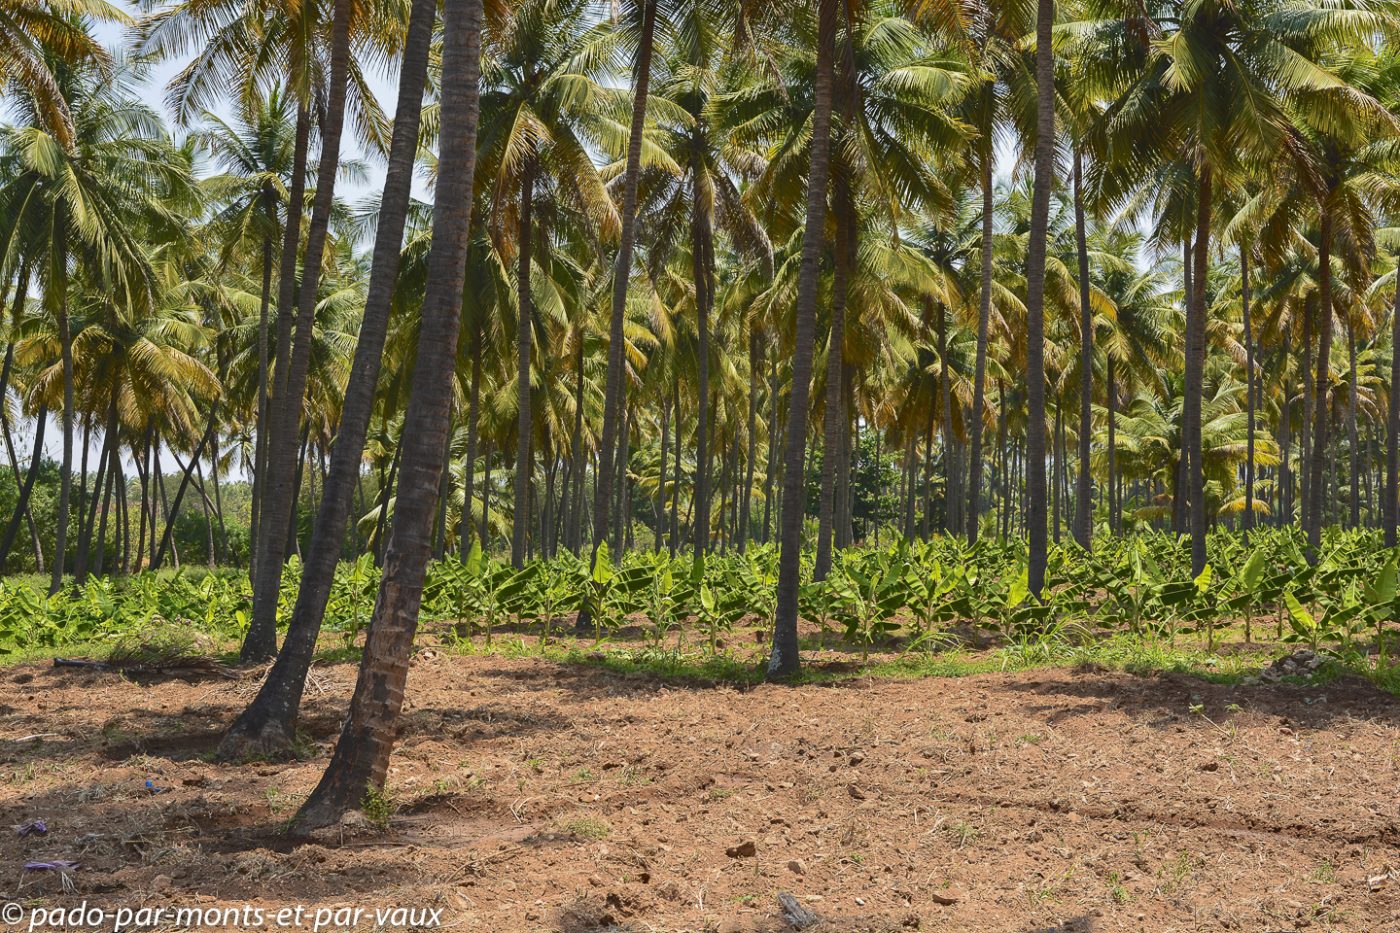 Route vers le Kerala - bananiers à l'ombre des palmiers